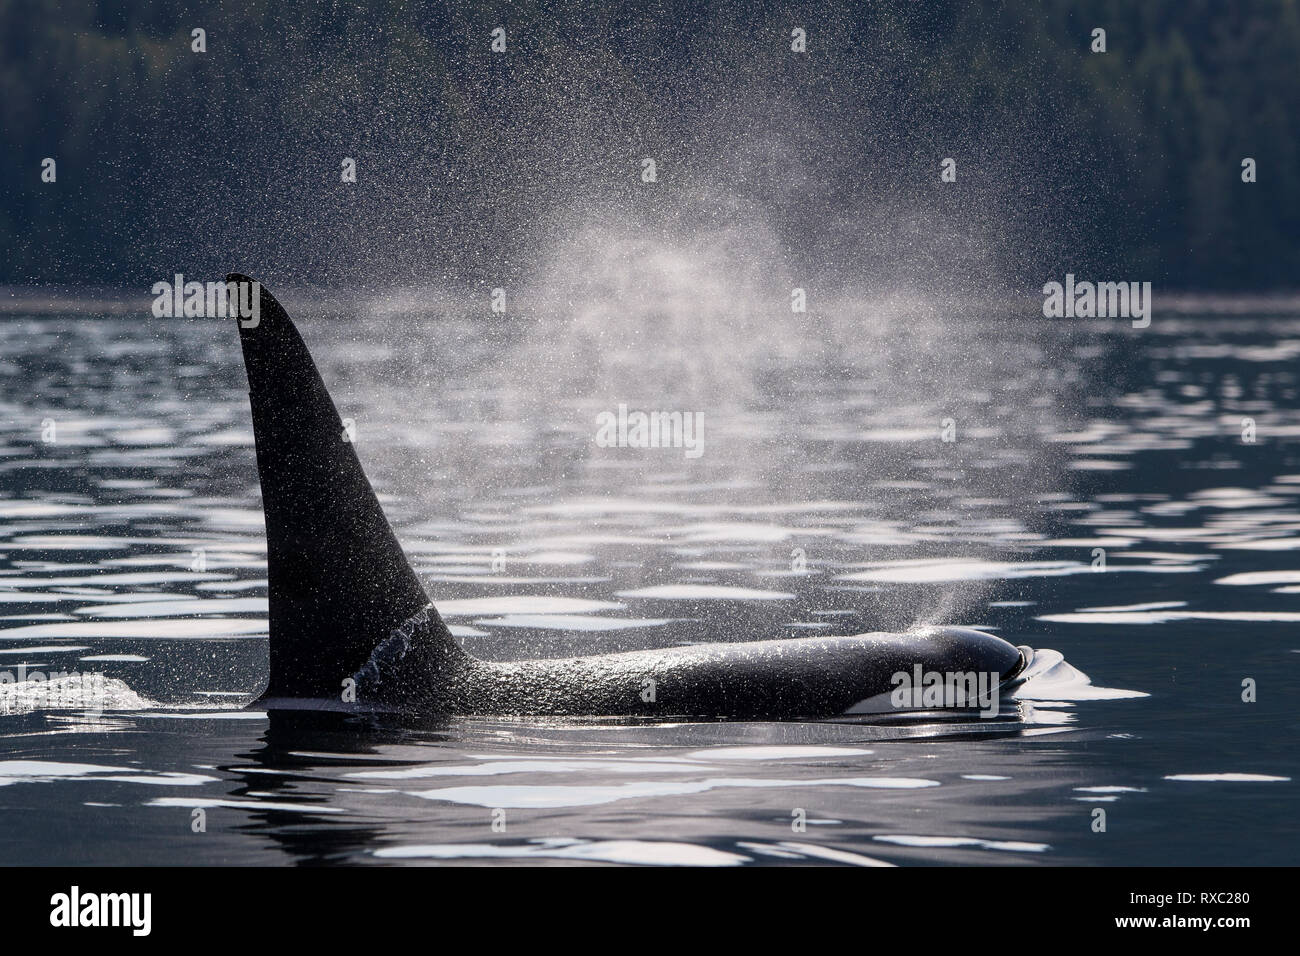 Residente del norte Killer whale chorreando cerca de la isla de Vancouver, en una tranquila y apacible estrecho Johnstone, Territorio de las Primeras Naciones, en el norte de la isla de Vancouver, British Columbia, Canadá Foto de stock